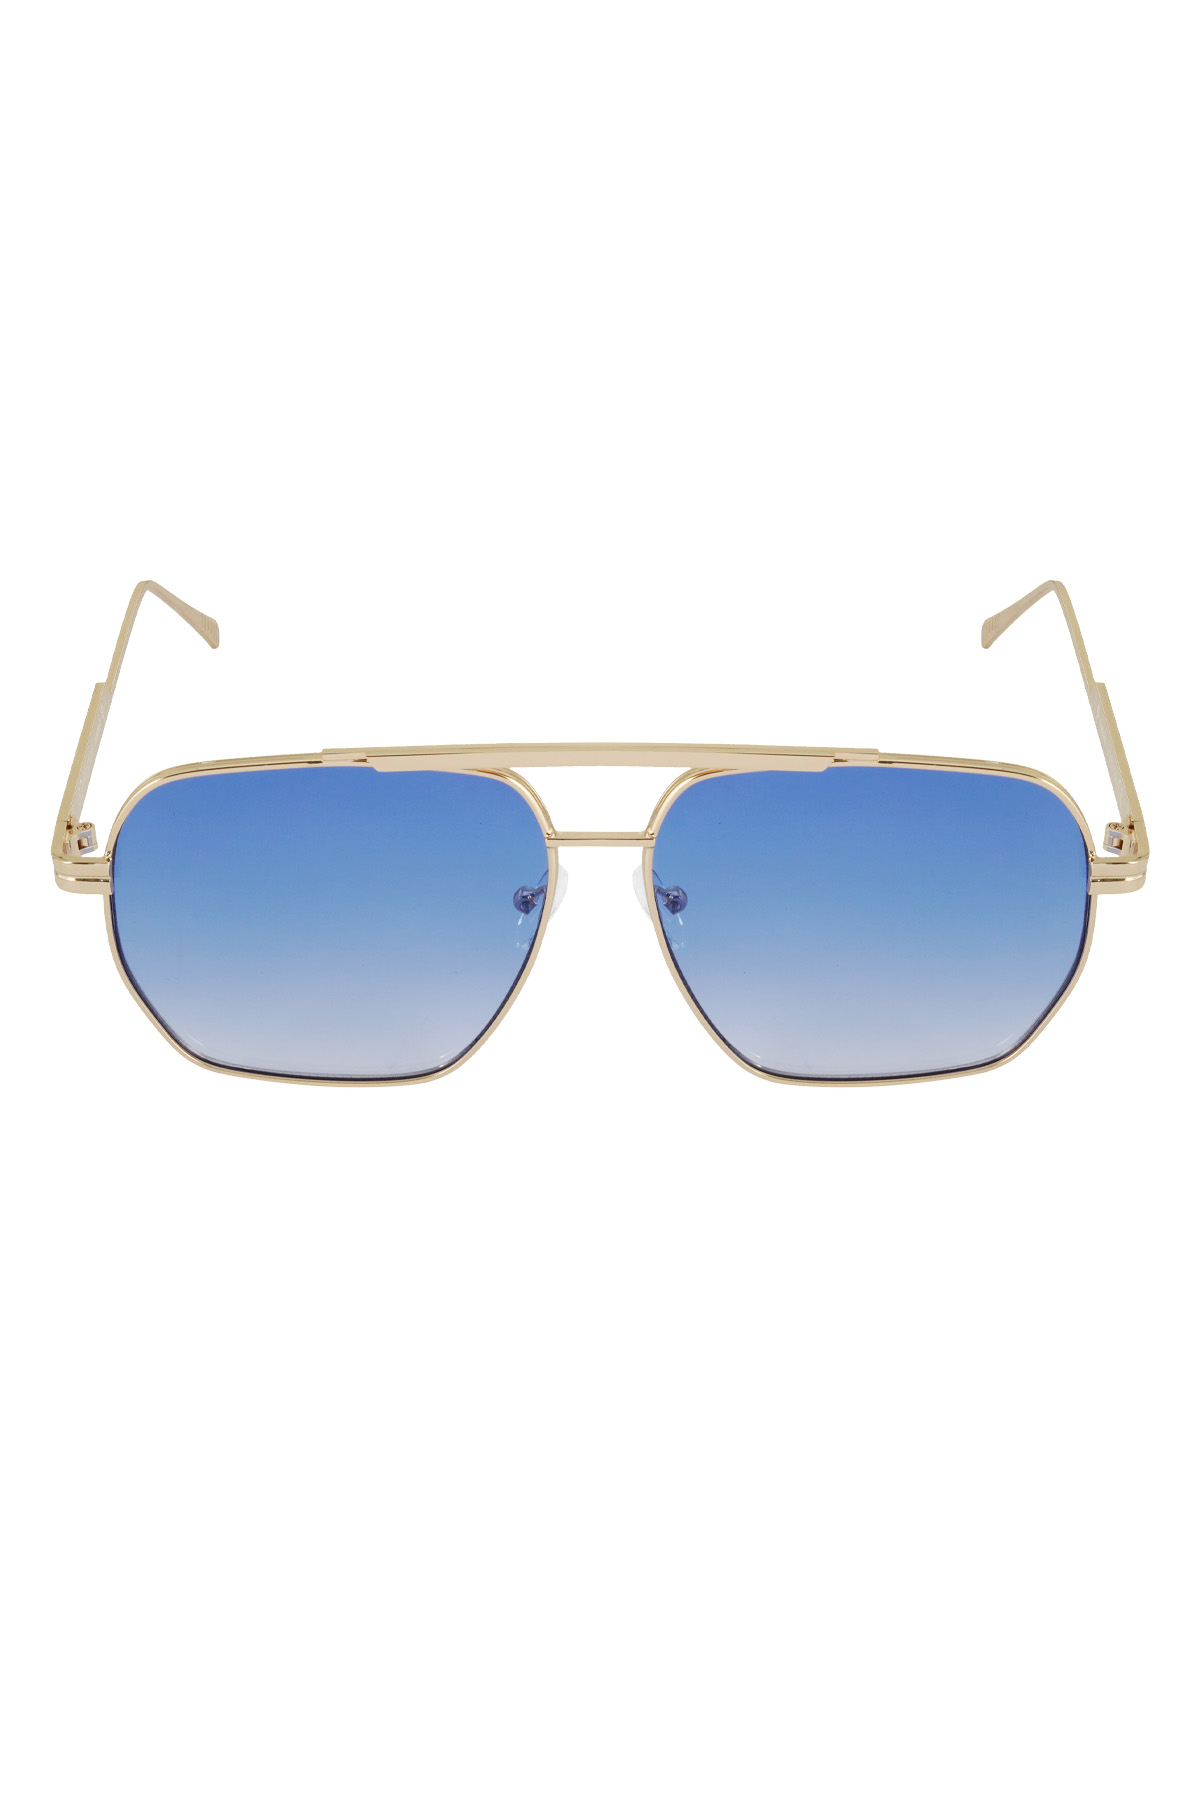 Sommersonnenbrille aus Metall – Blau und Gold Bild4